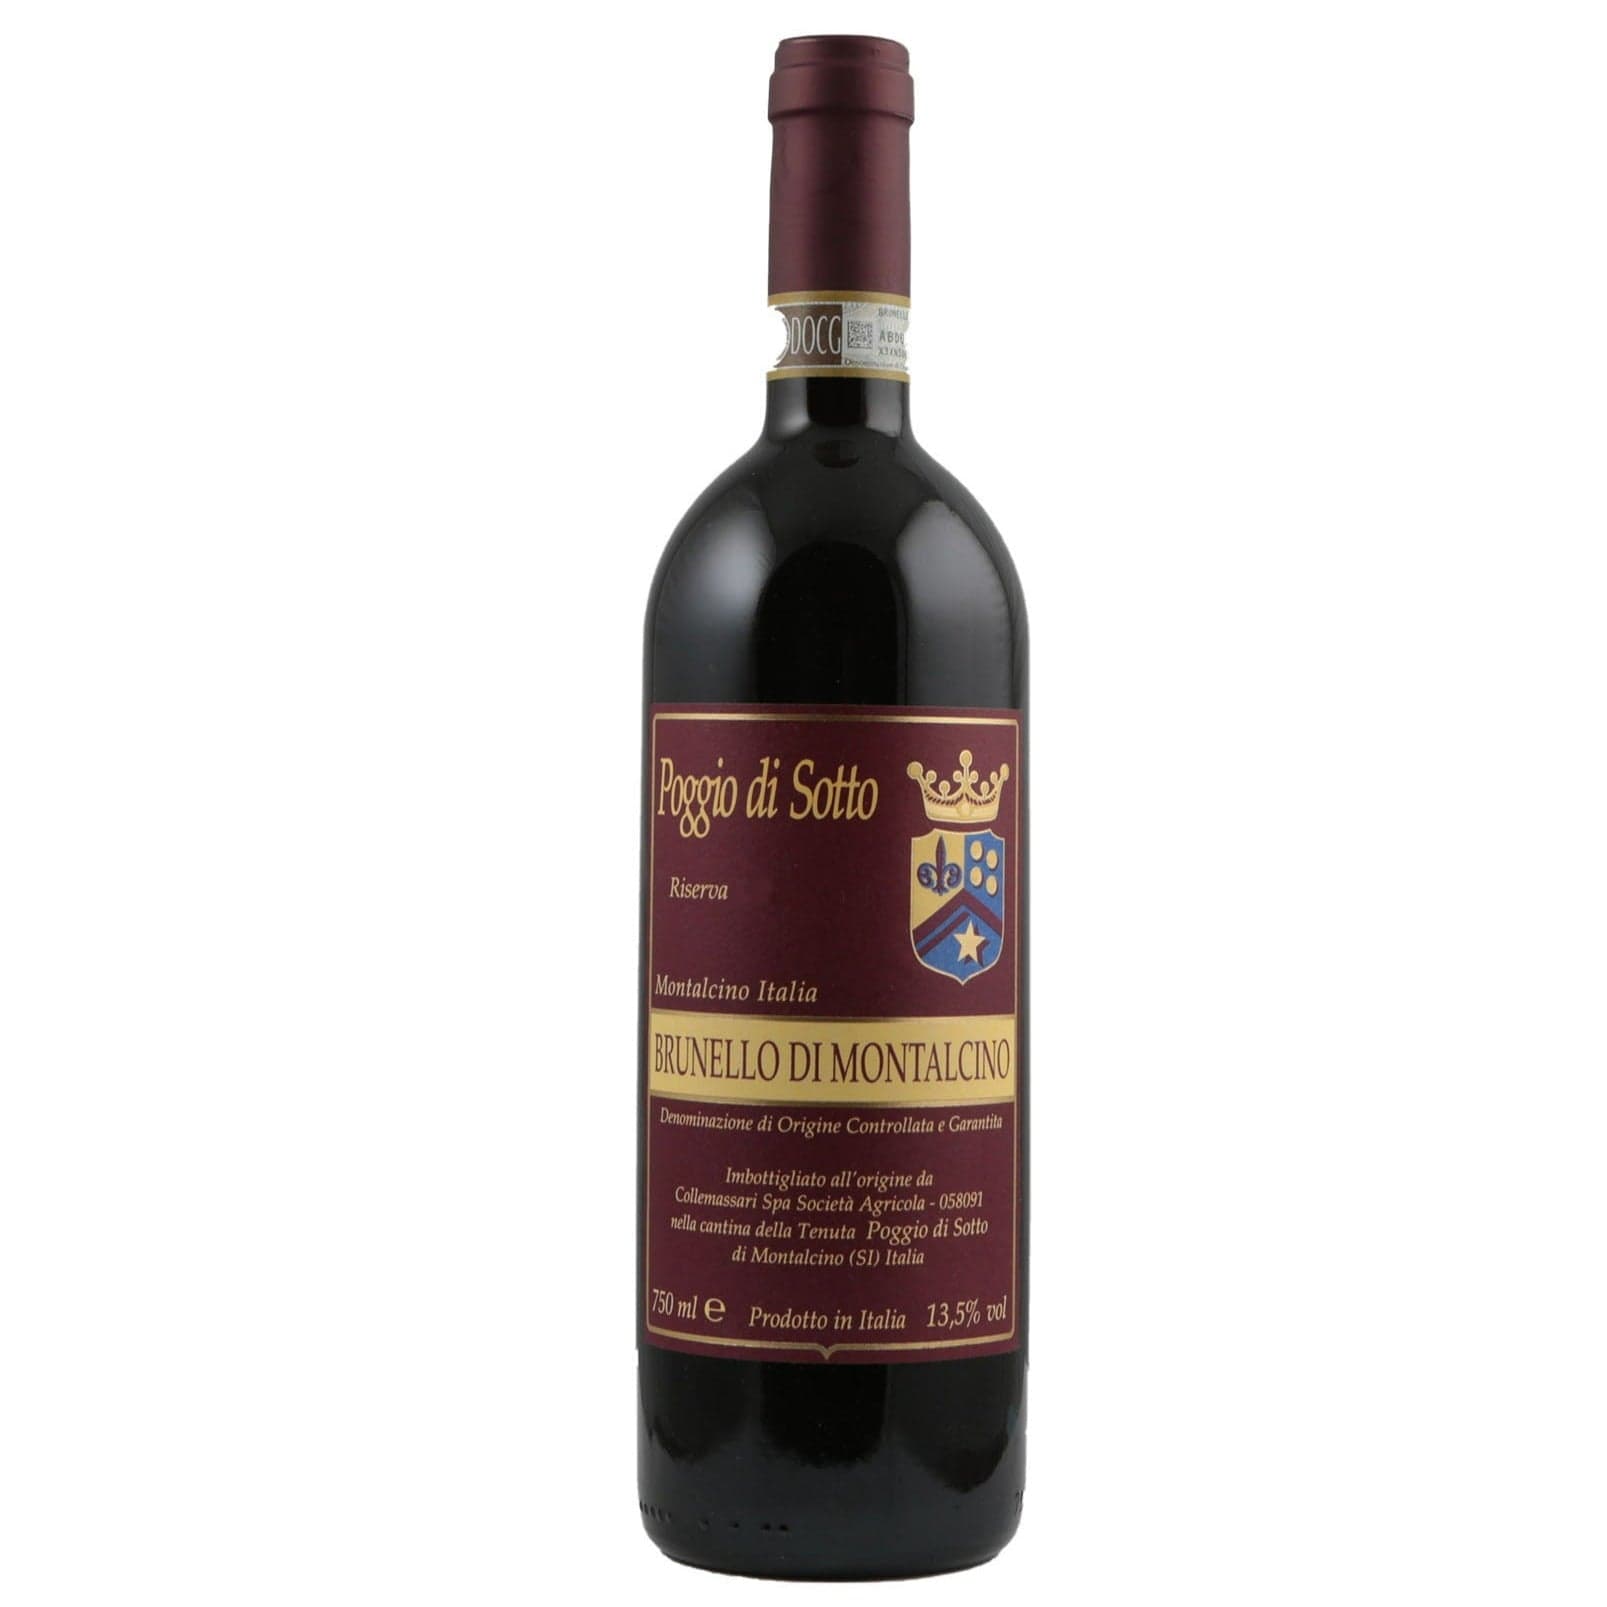 Single bottle of Red wine Poggio di Sotto, Brunello di Montalcino Riserva DOCG, Brunello di Montalcino 2015 100% Sangiovese